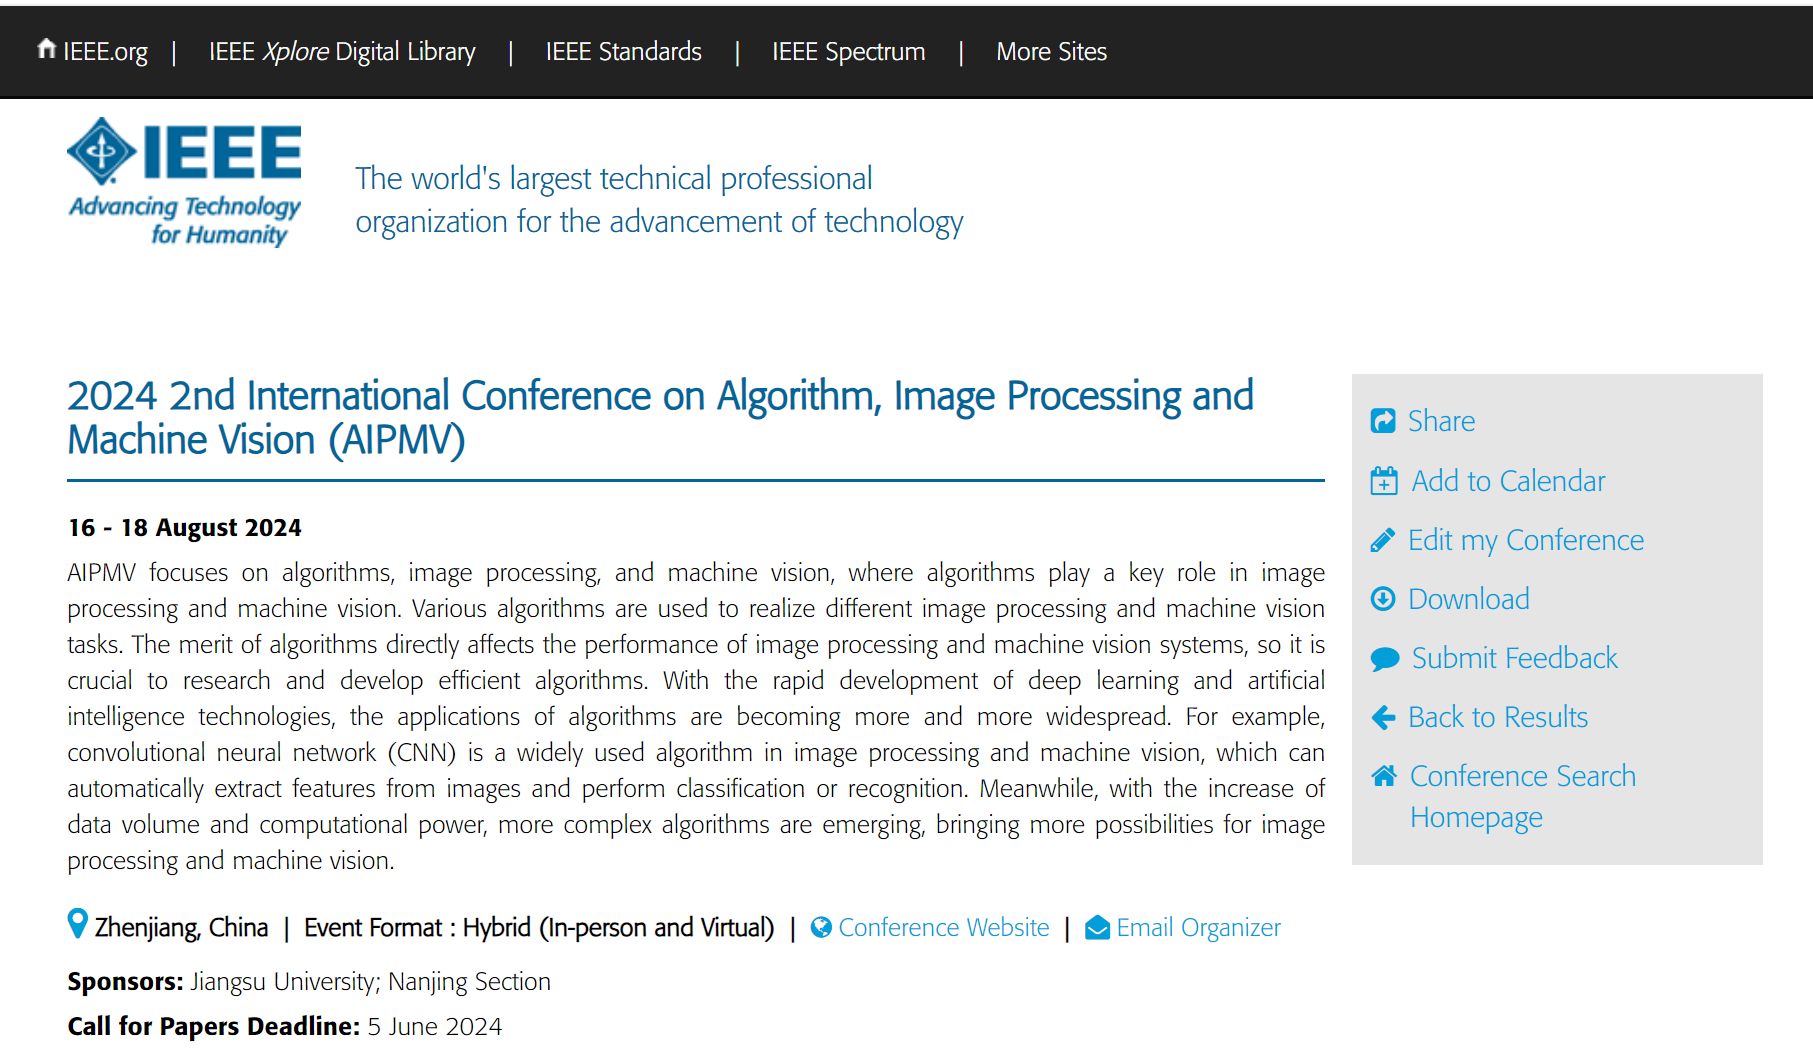 第二届算法、图像处理与机器视觉国际学术会议(AIPMV 2024)